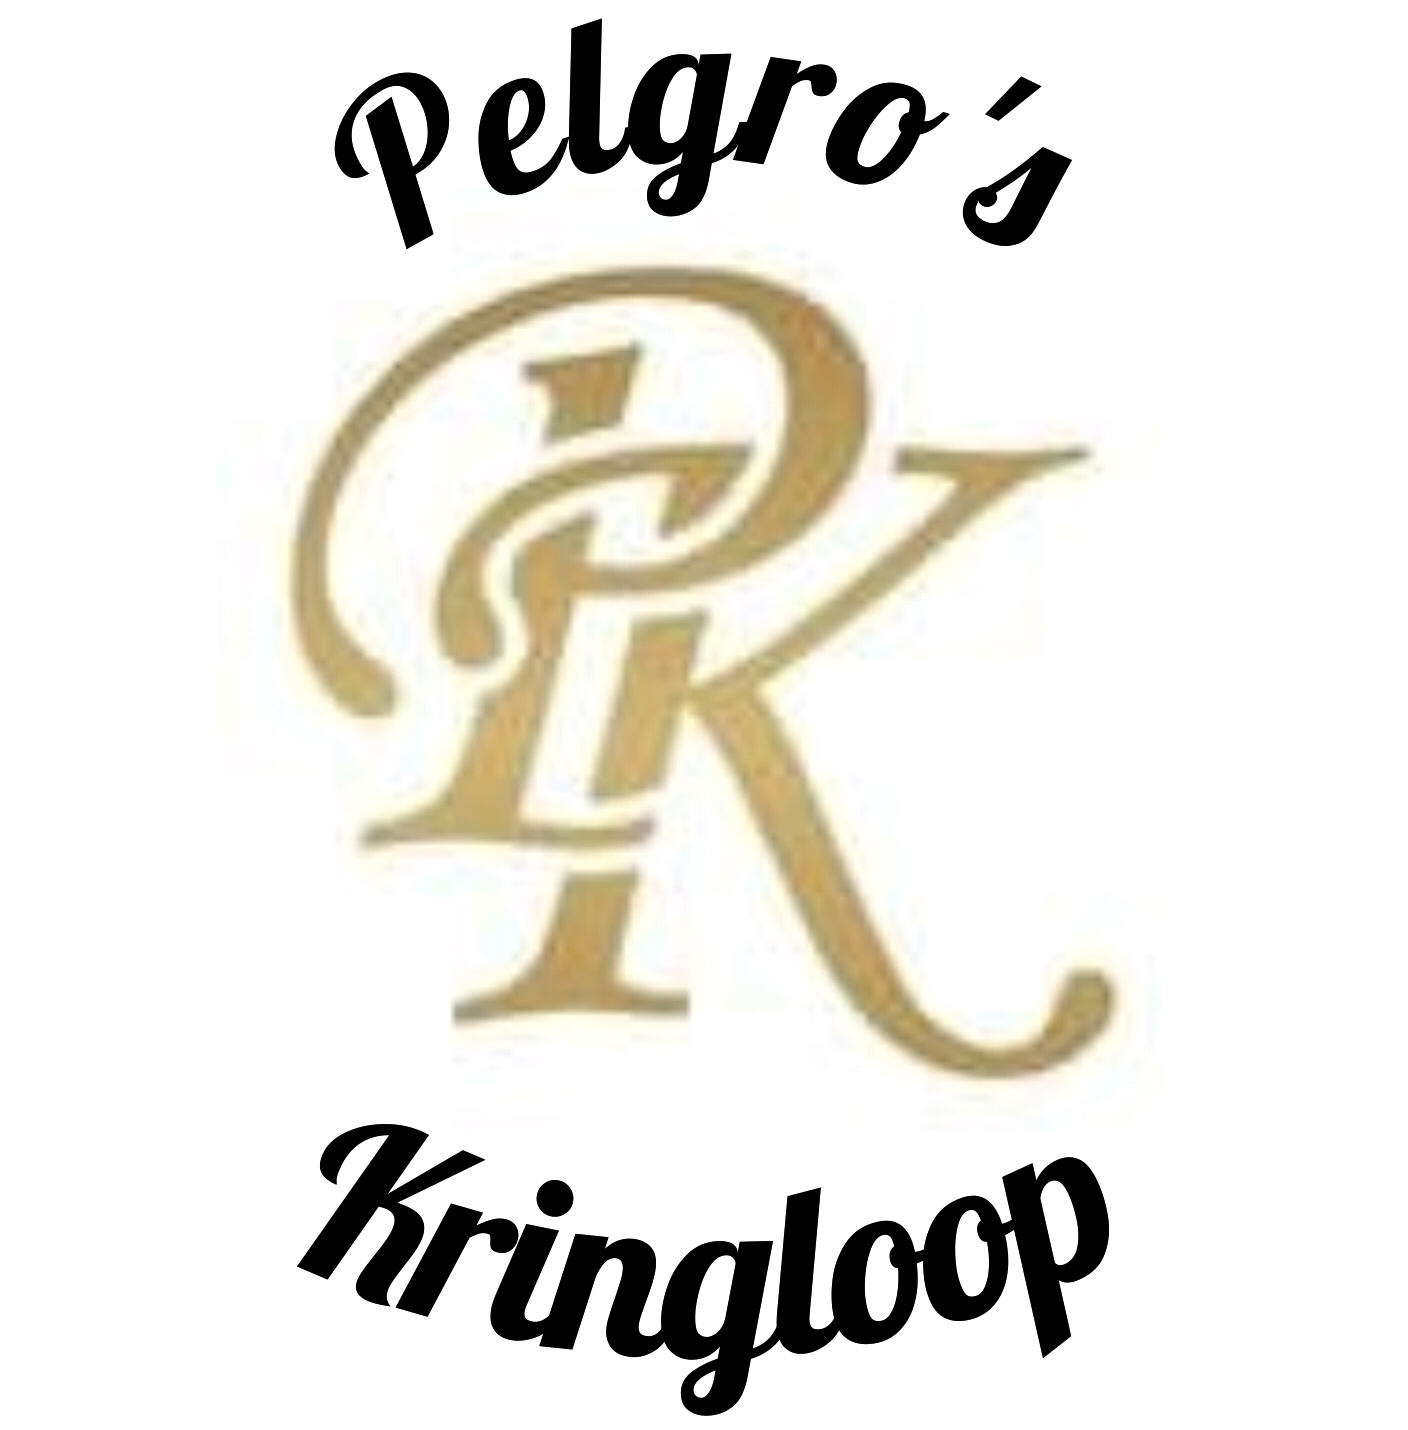 pelgros-kringloop-logo